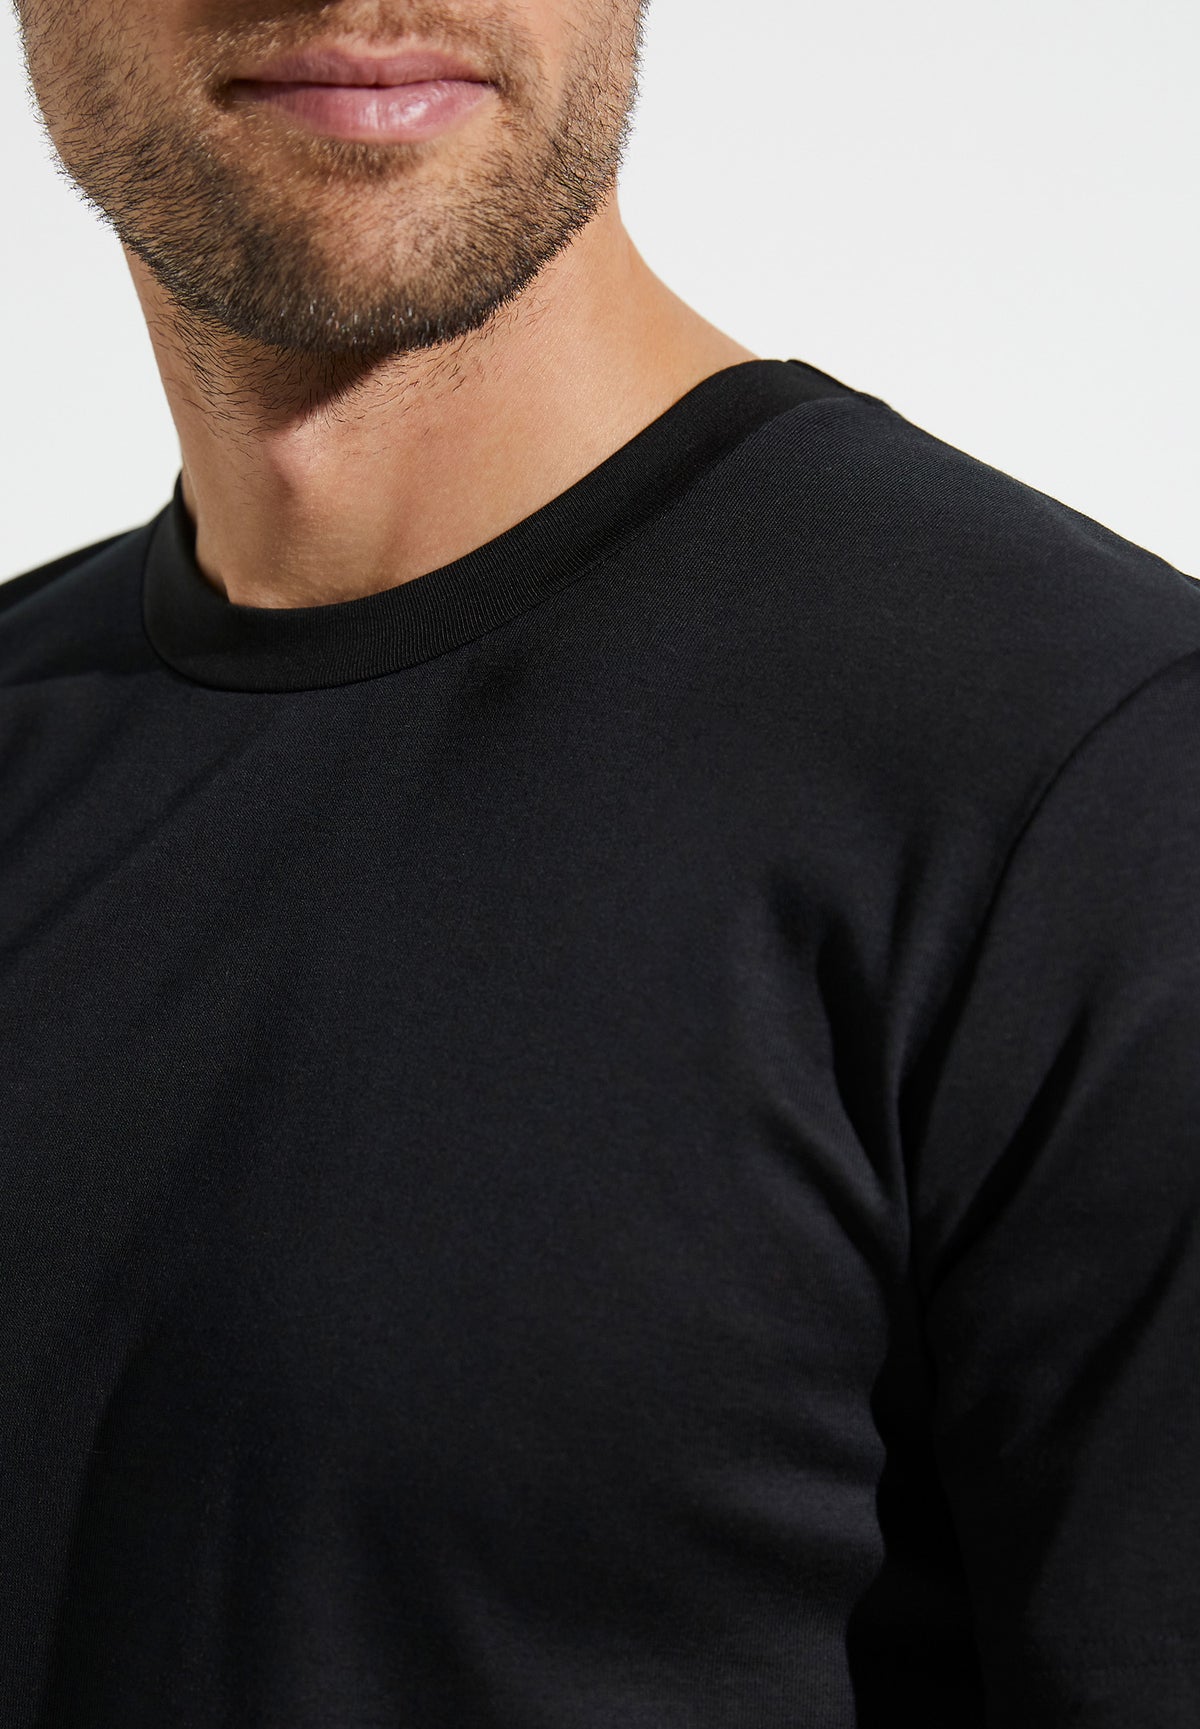 Business Class | T-Shirt Short Sleeve - black